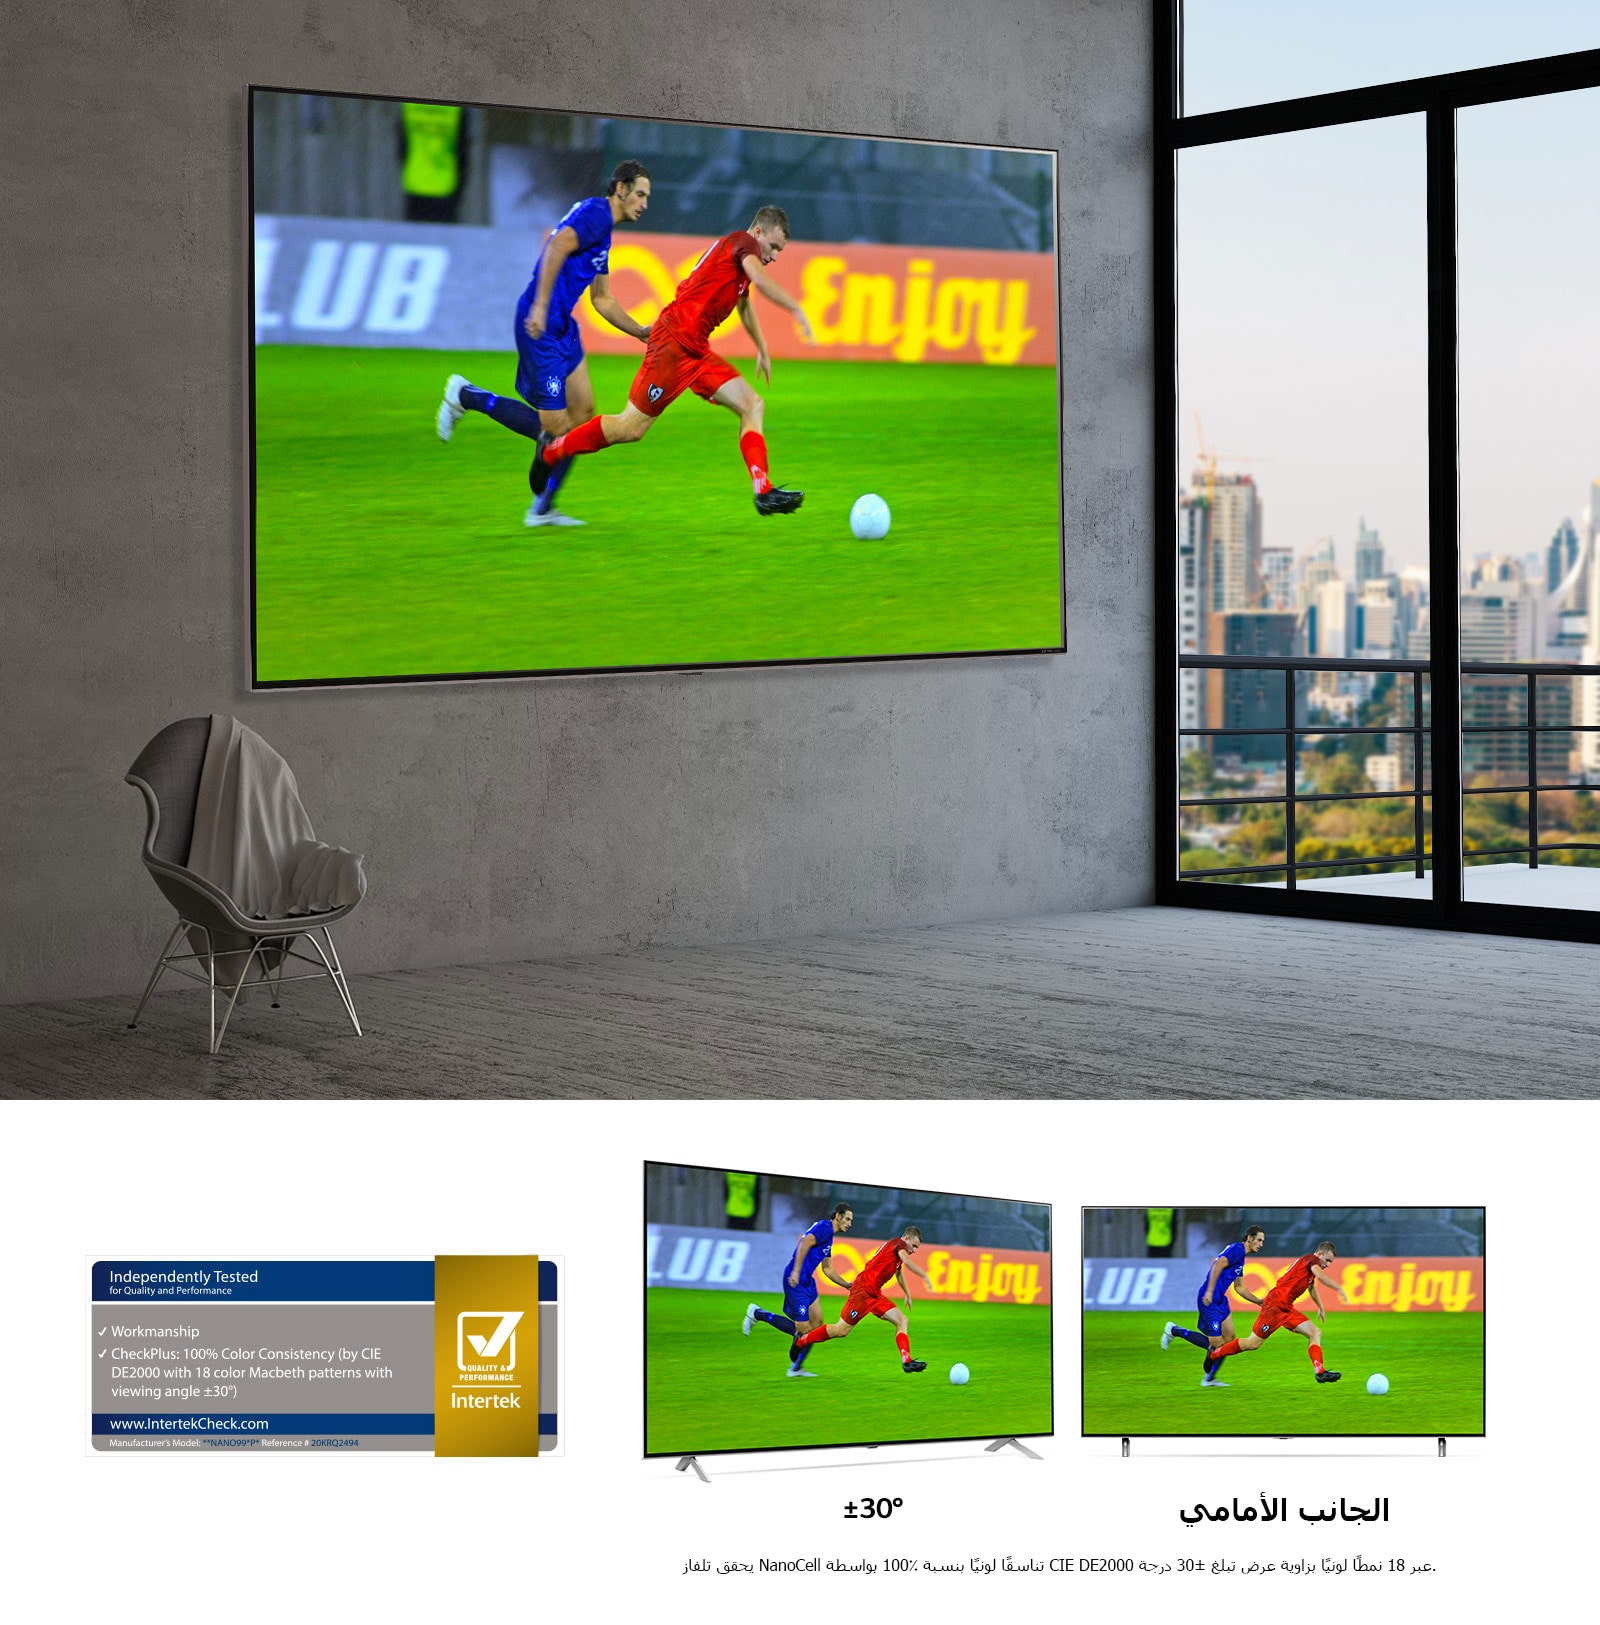 شاشة تلفاز مسطحة كبيرة مثبتة على حائط رمادي.  يظهر على الشاشة لاعبي كرة قدم في منتصف المباراة. 